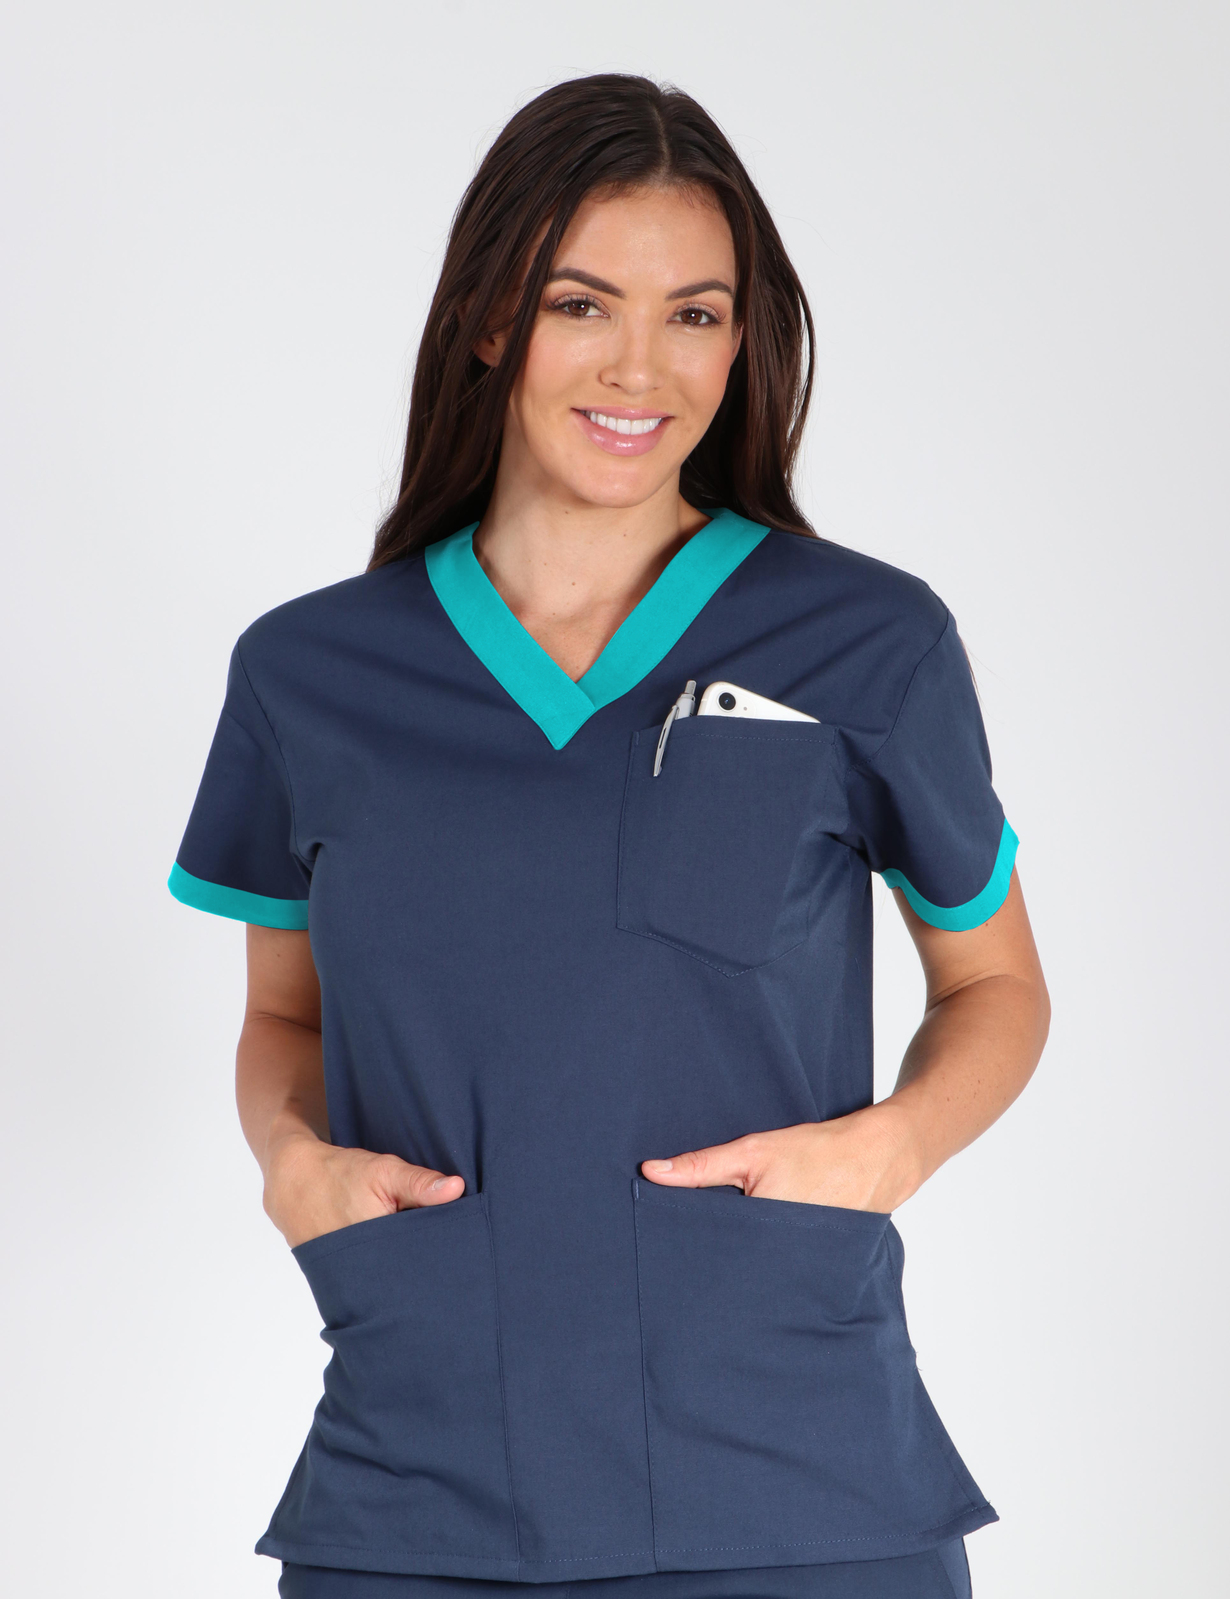 Registered Nurse Uniform Top Bundle - PNP-NAHLN -